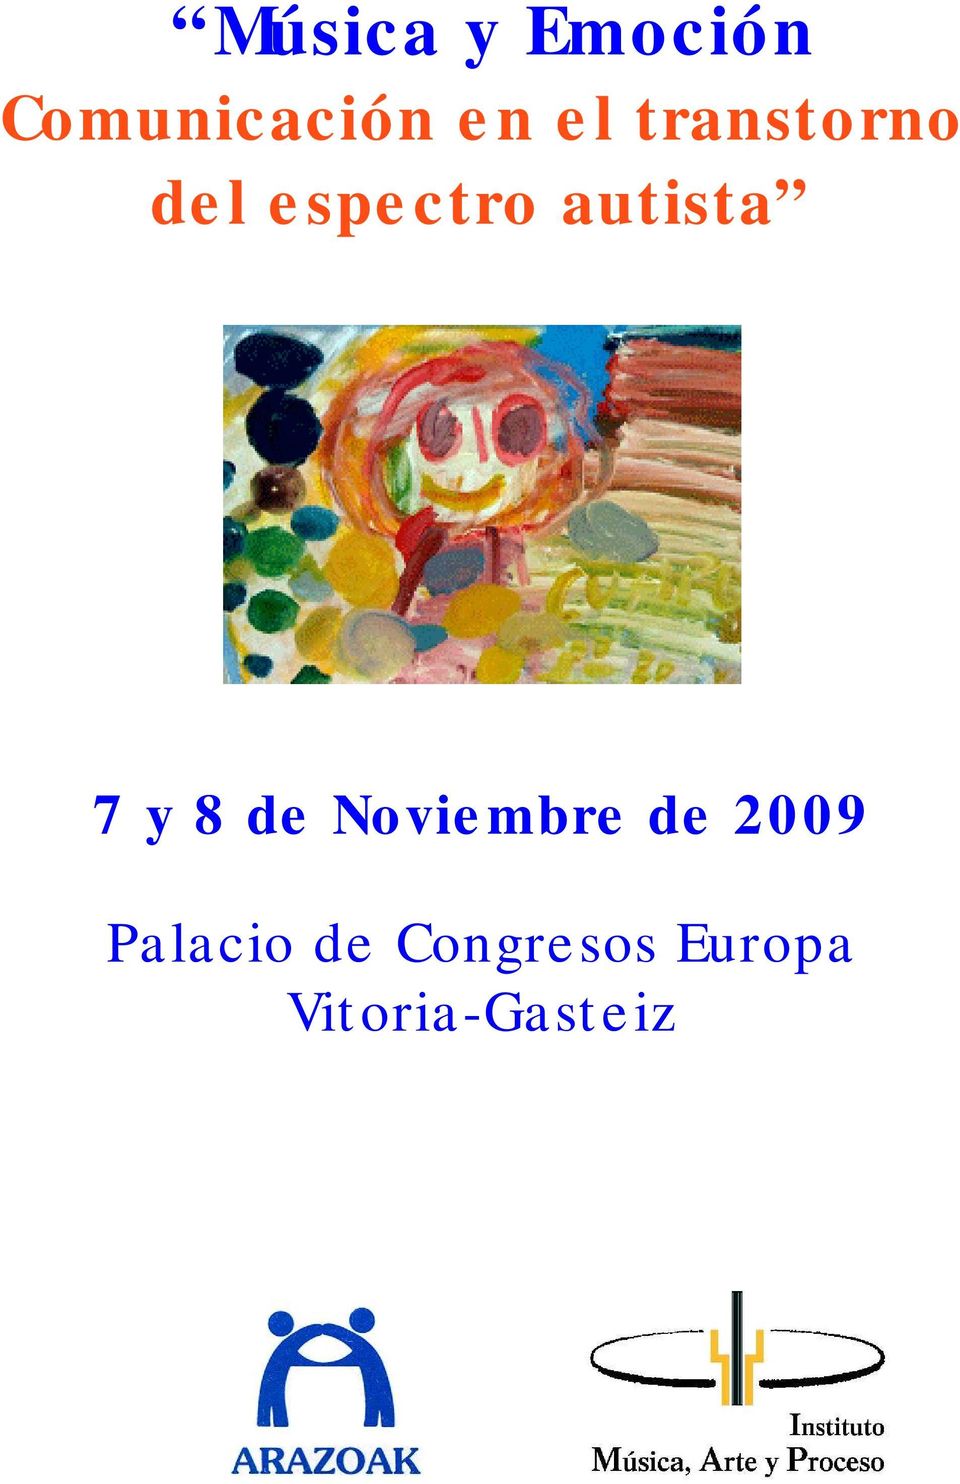 7 y 8 de Noviembre de 2009 Palacio